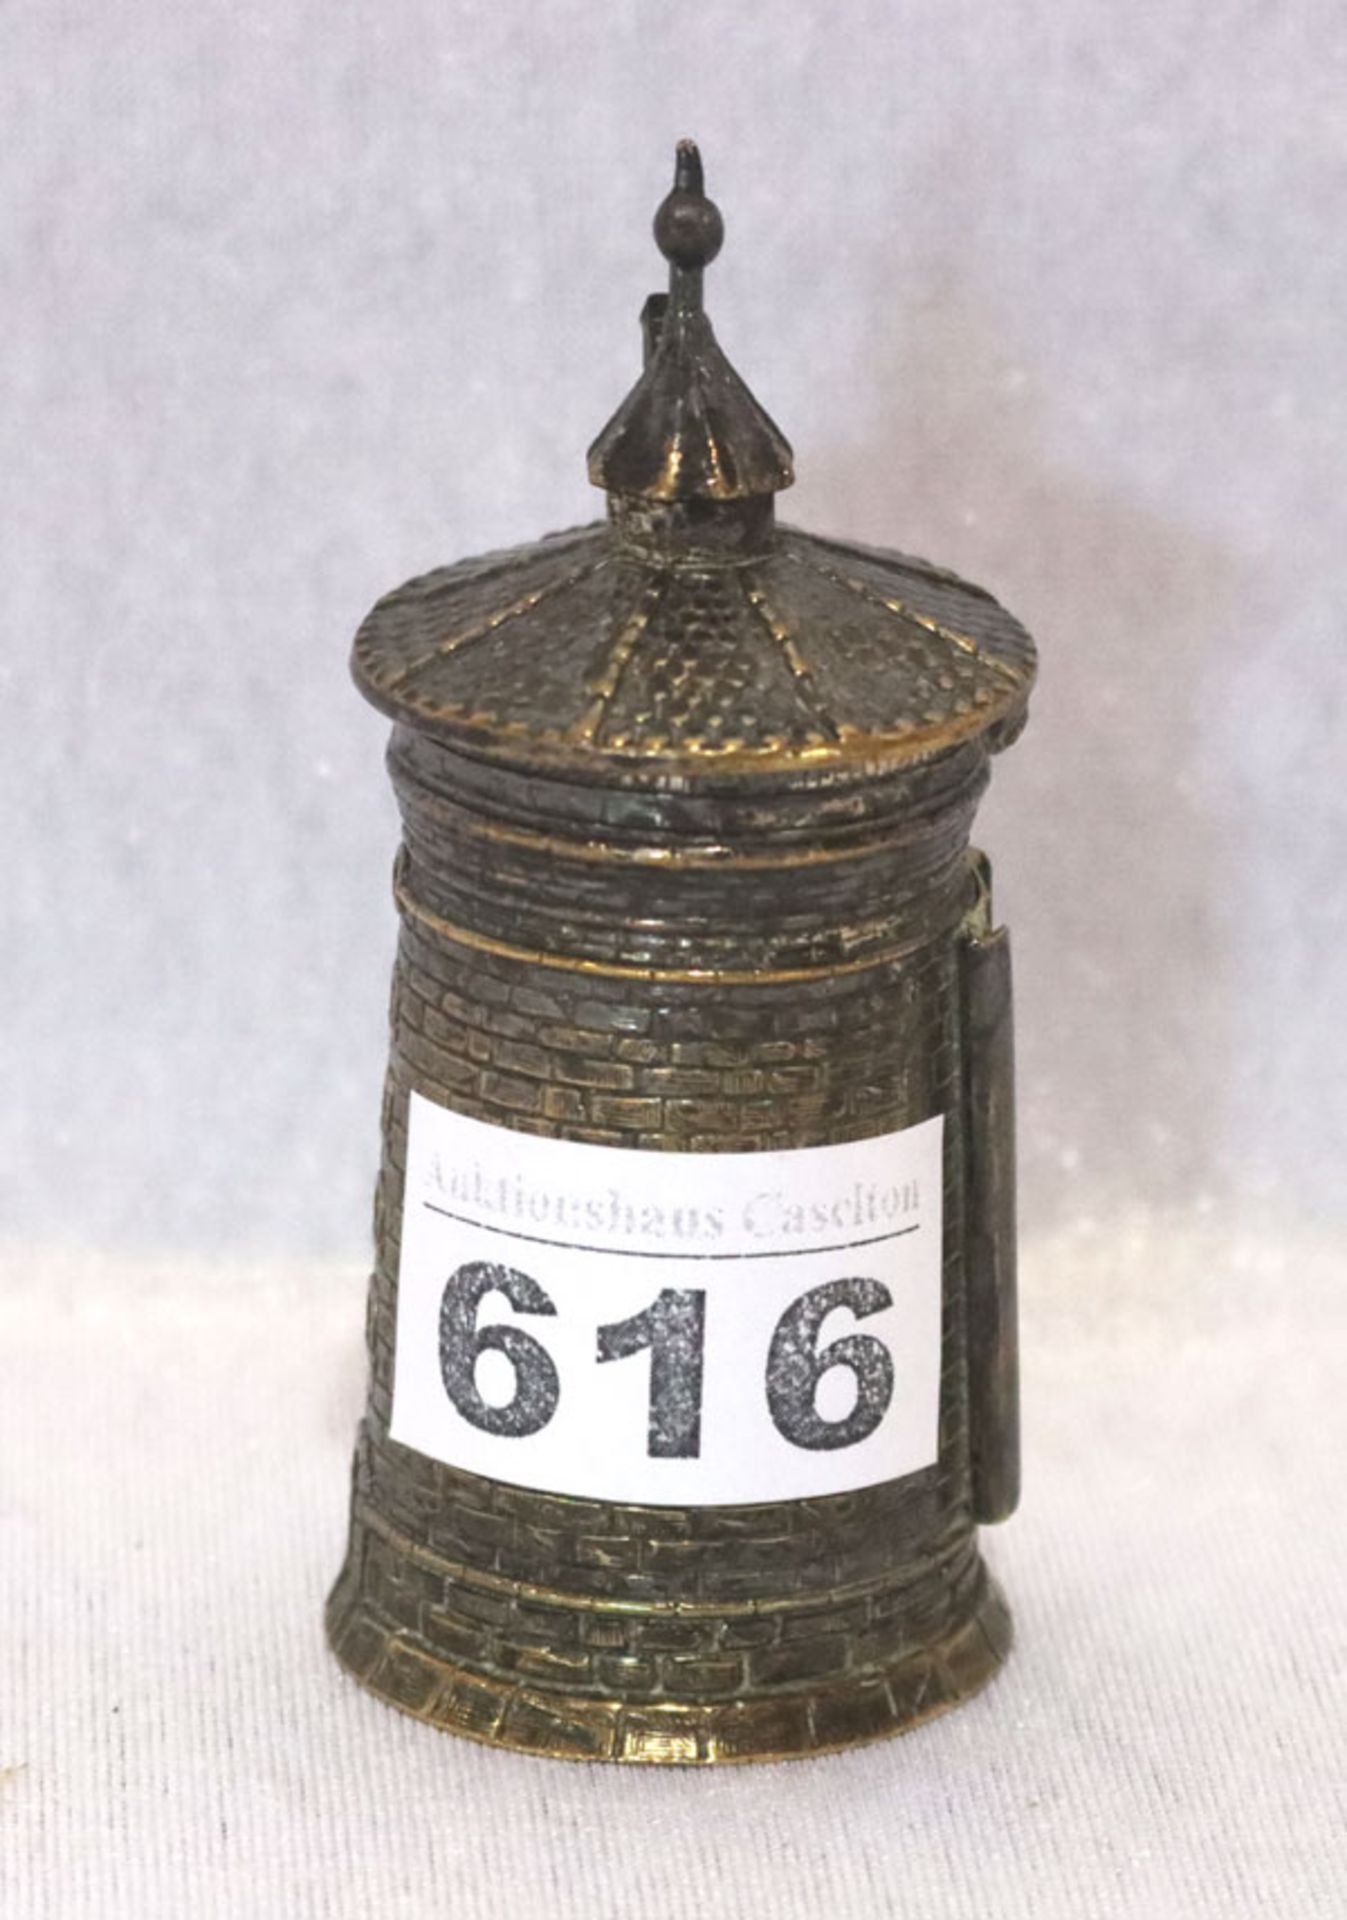 Streichholzdose in Turmform mit Reibfläche, versilbert, H 9 cm, D 4,5 cm, Gebrauchsspuren